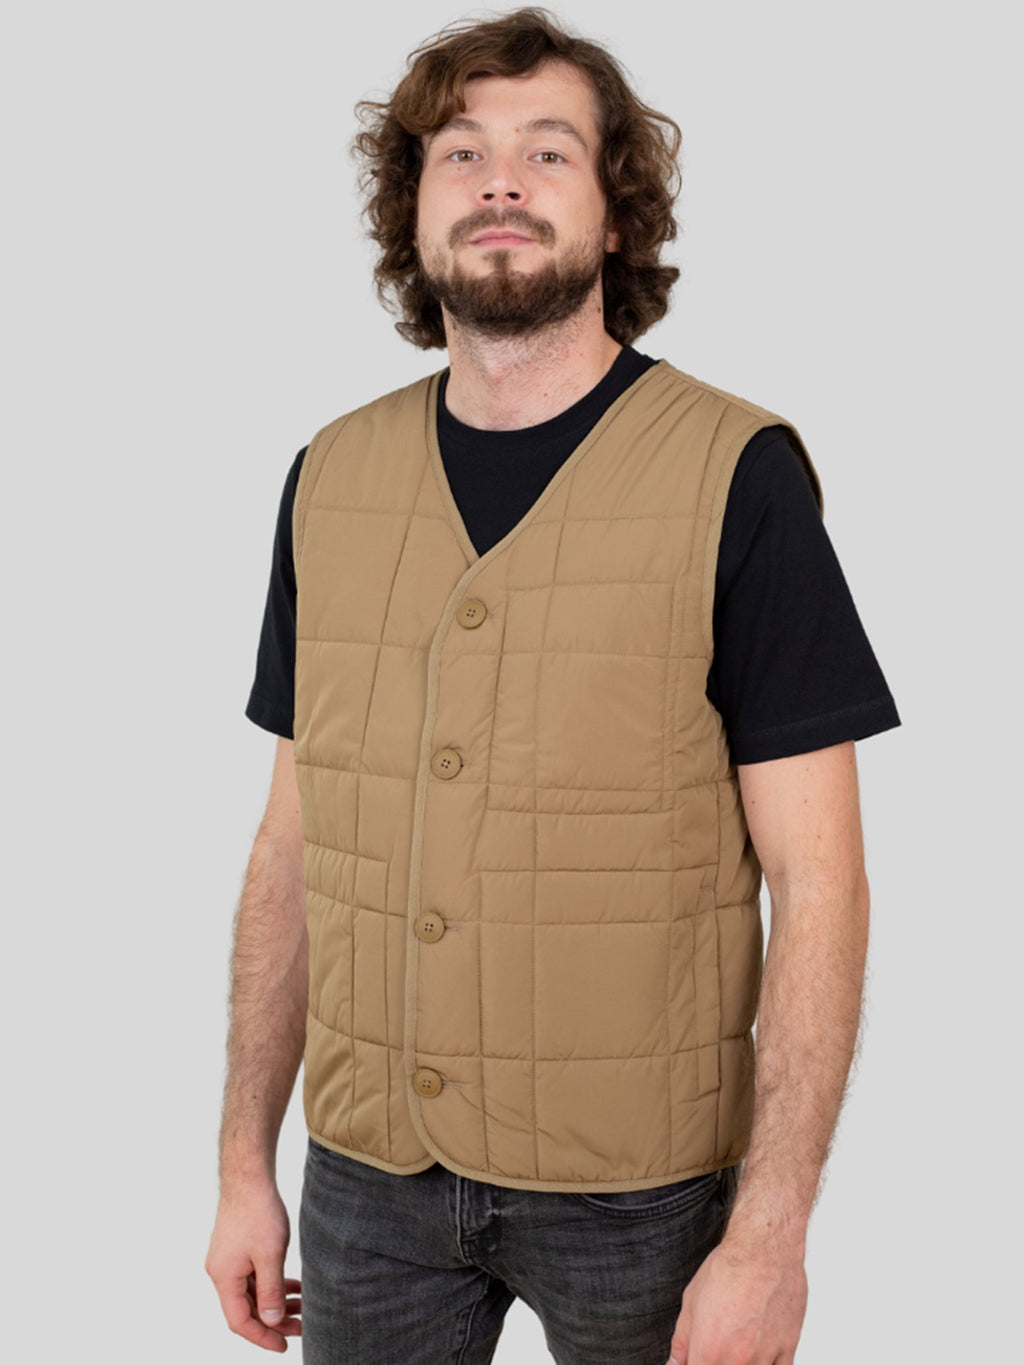 Rocco gewatteerd vest - khaki